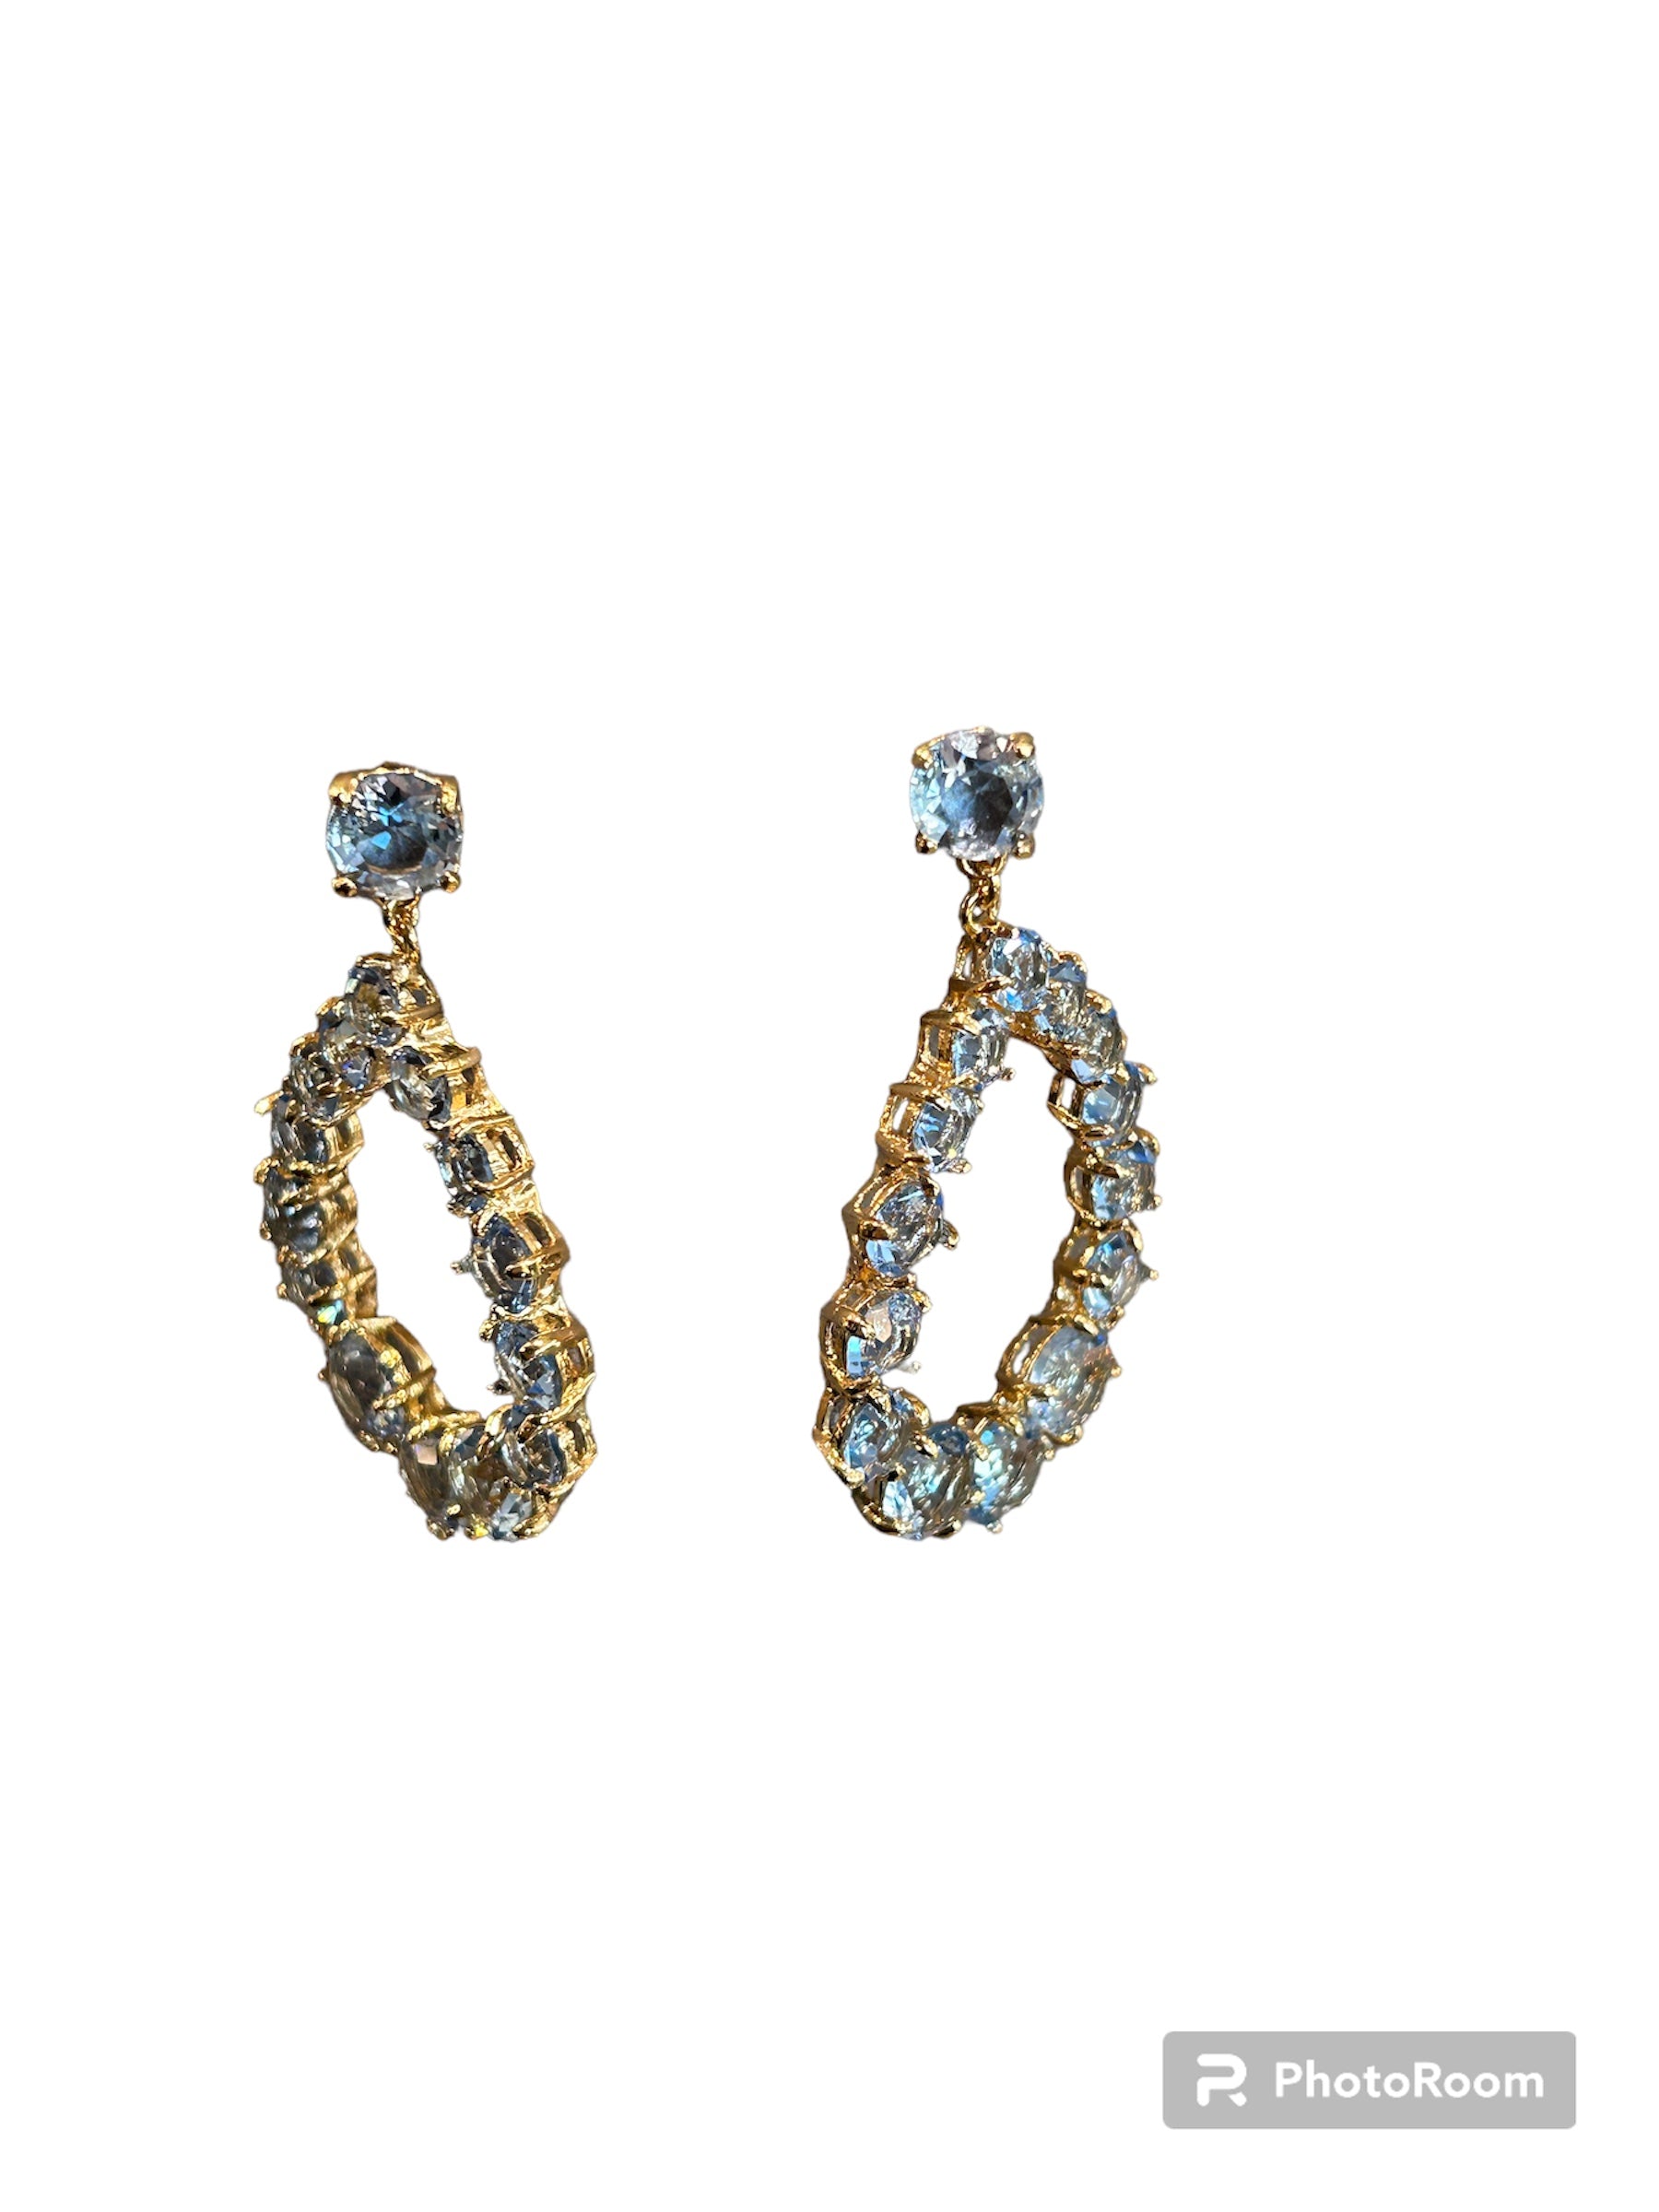 IL Mio Re - Boucles d'oreilles pendantes goutte en bronze doré et pierres bleues - ILMIORE OR 046 AZ